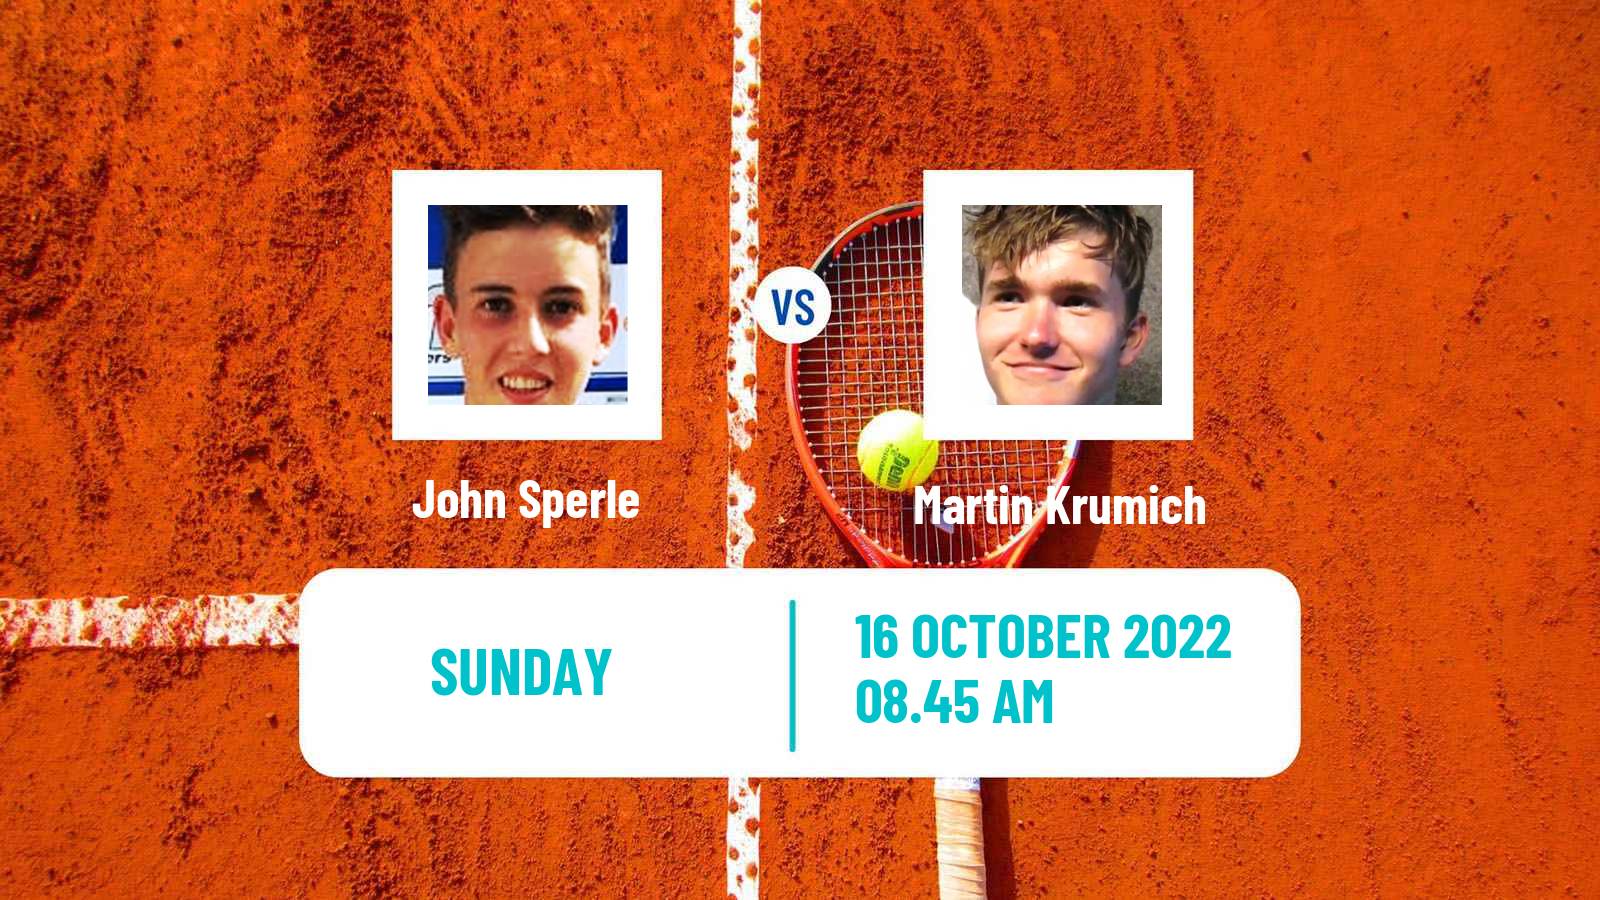 Tennis ATP Challenger John Sperle - Martin Krumich